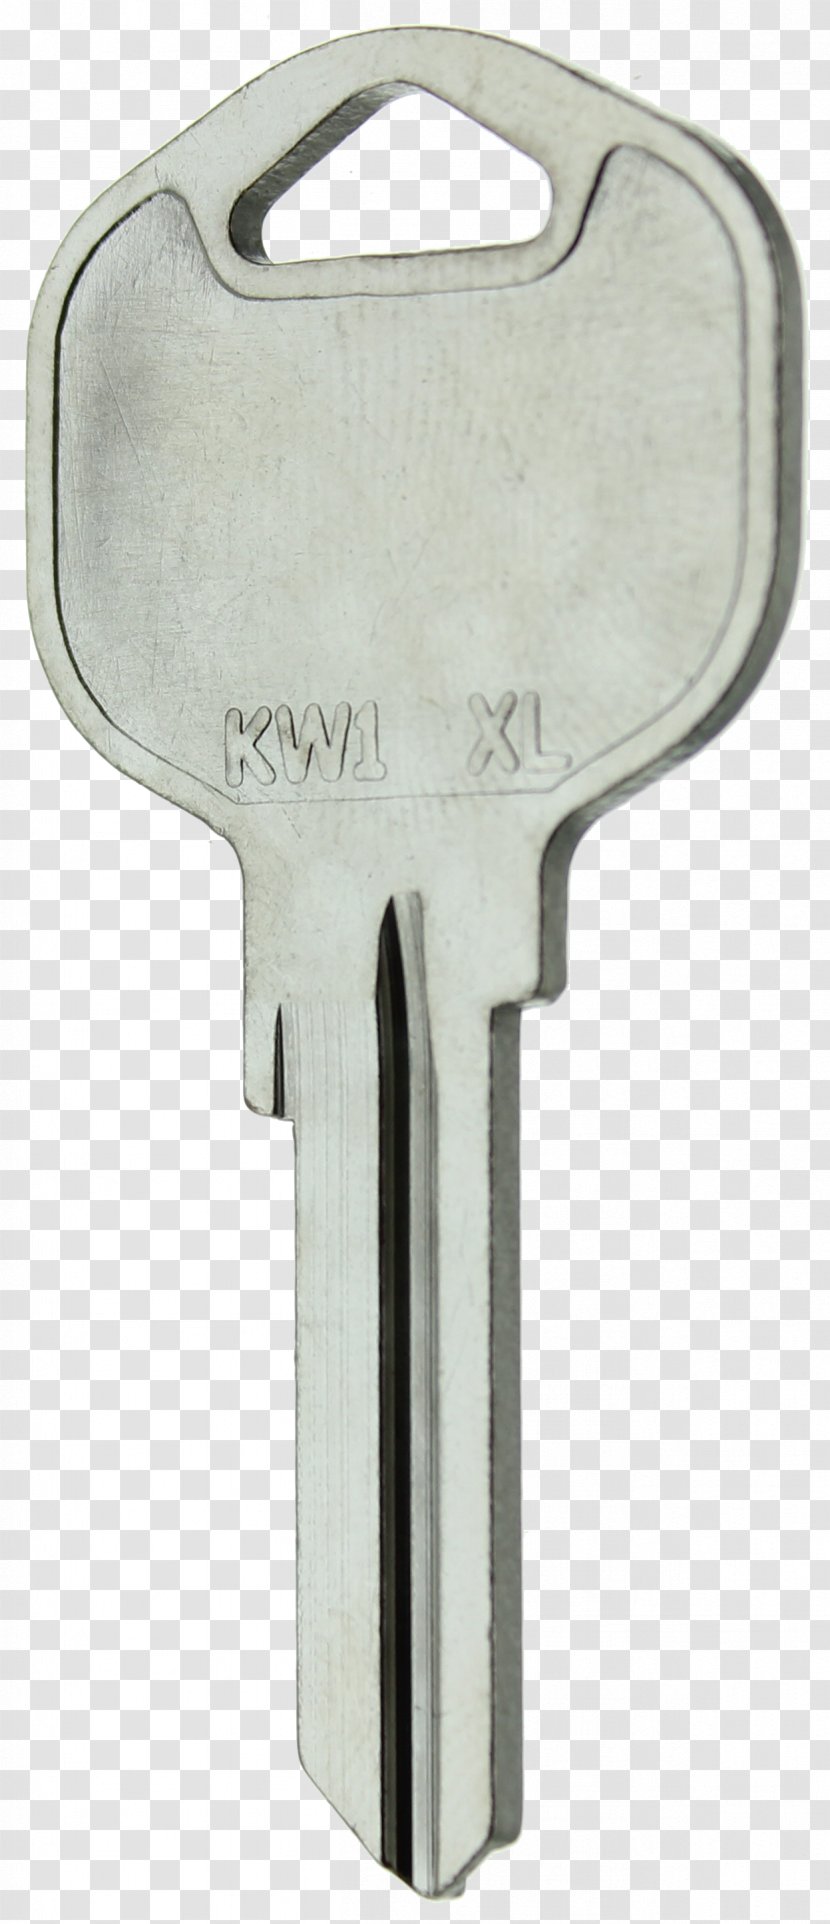 Padlock Key Blank Craze Inc Tool Transparent PNG